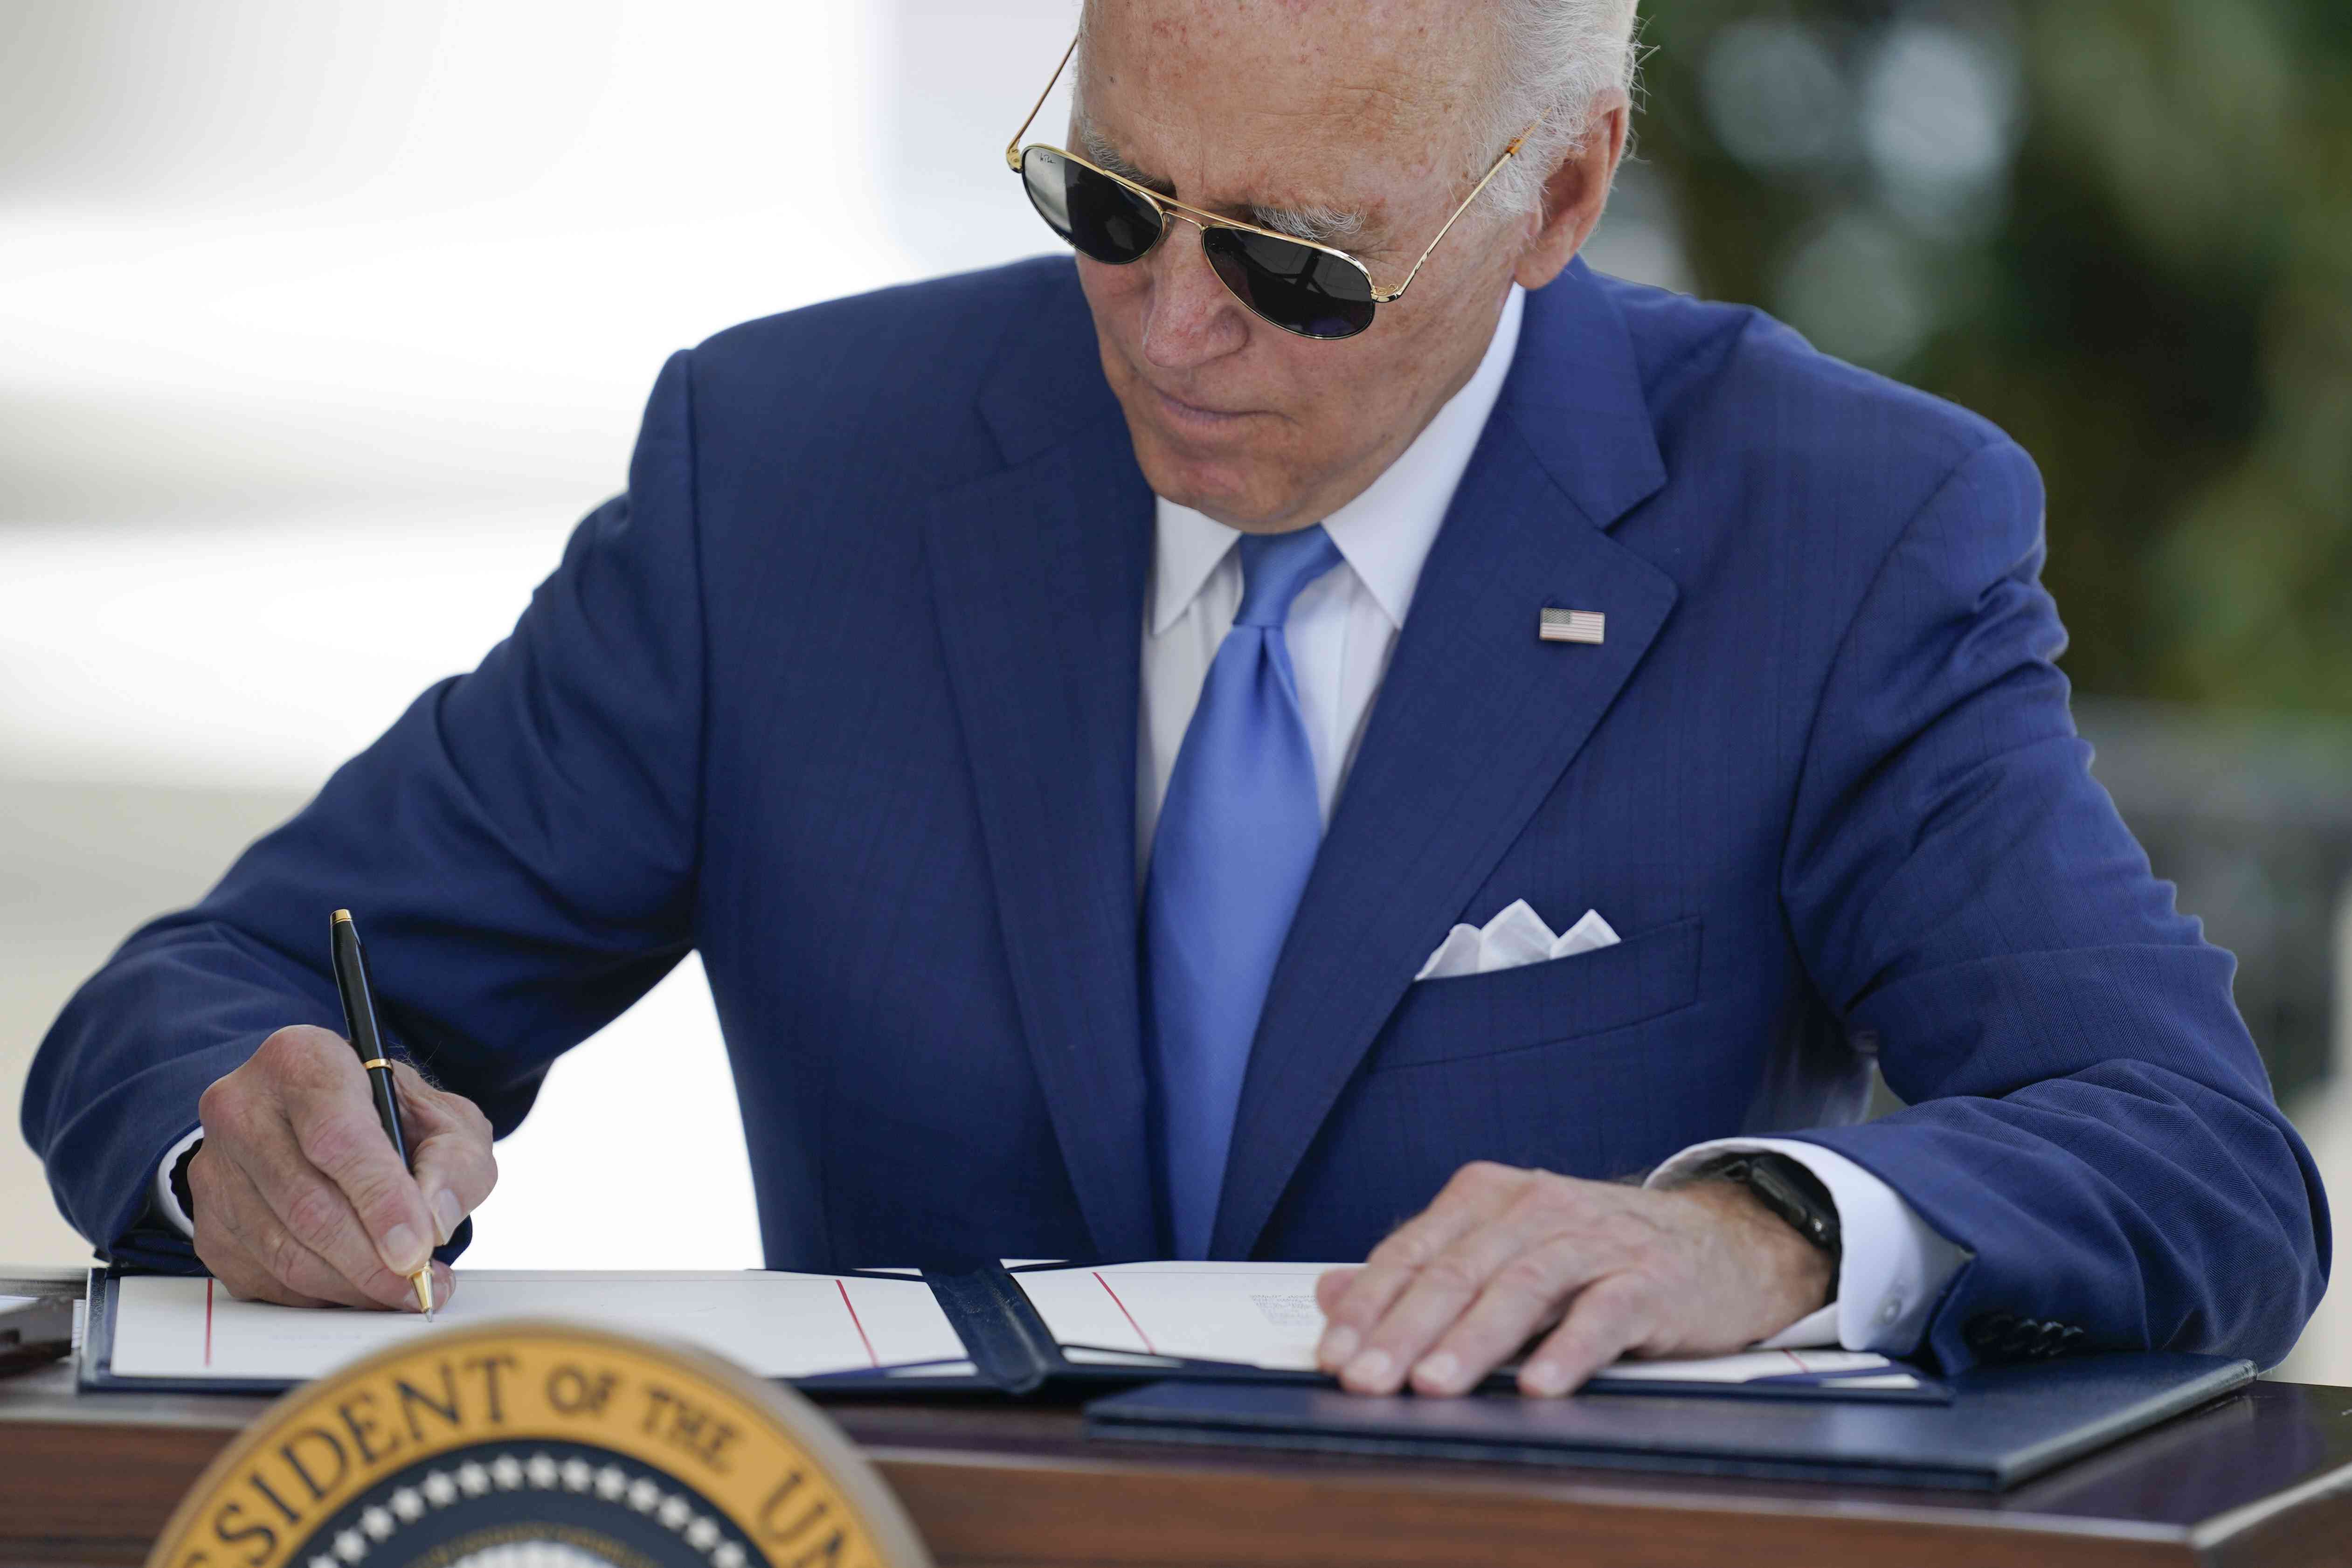 President Joe Biden Signing Paperwork